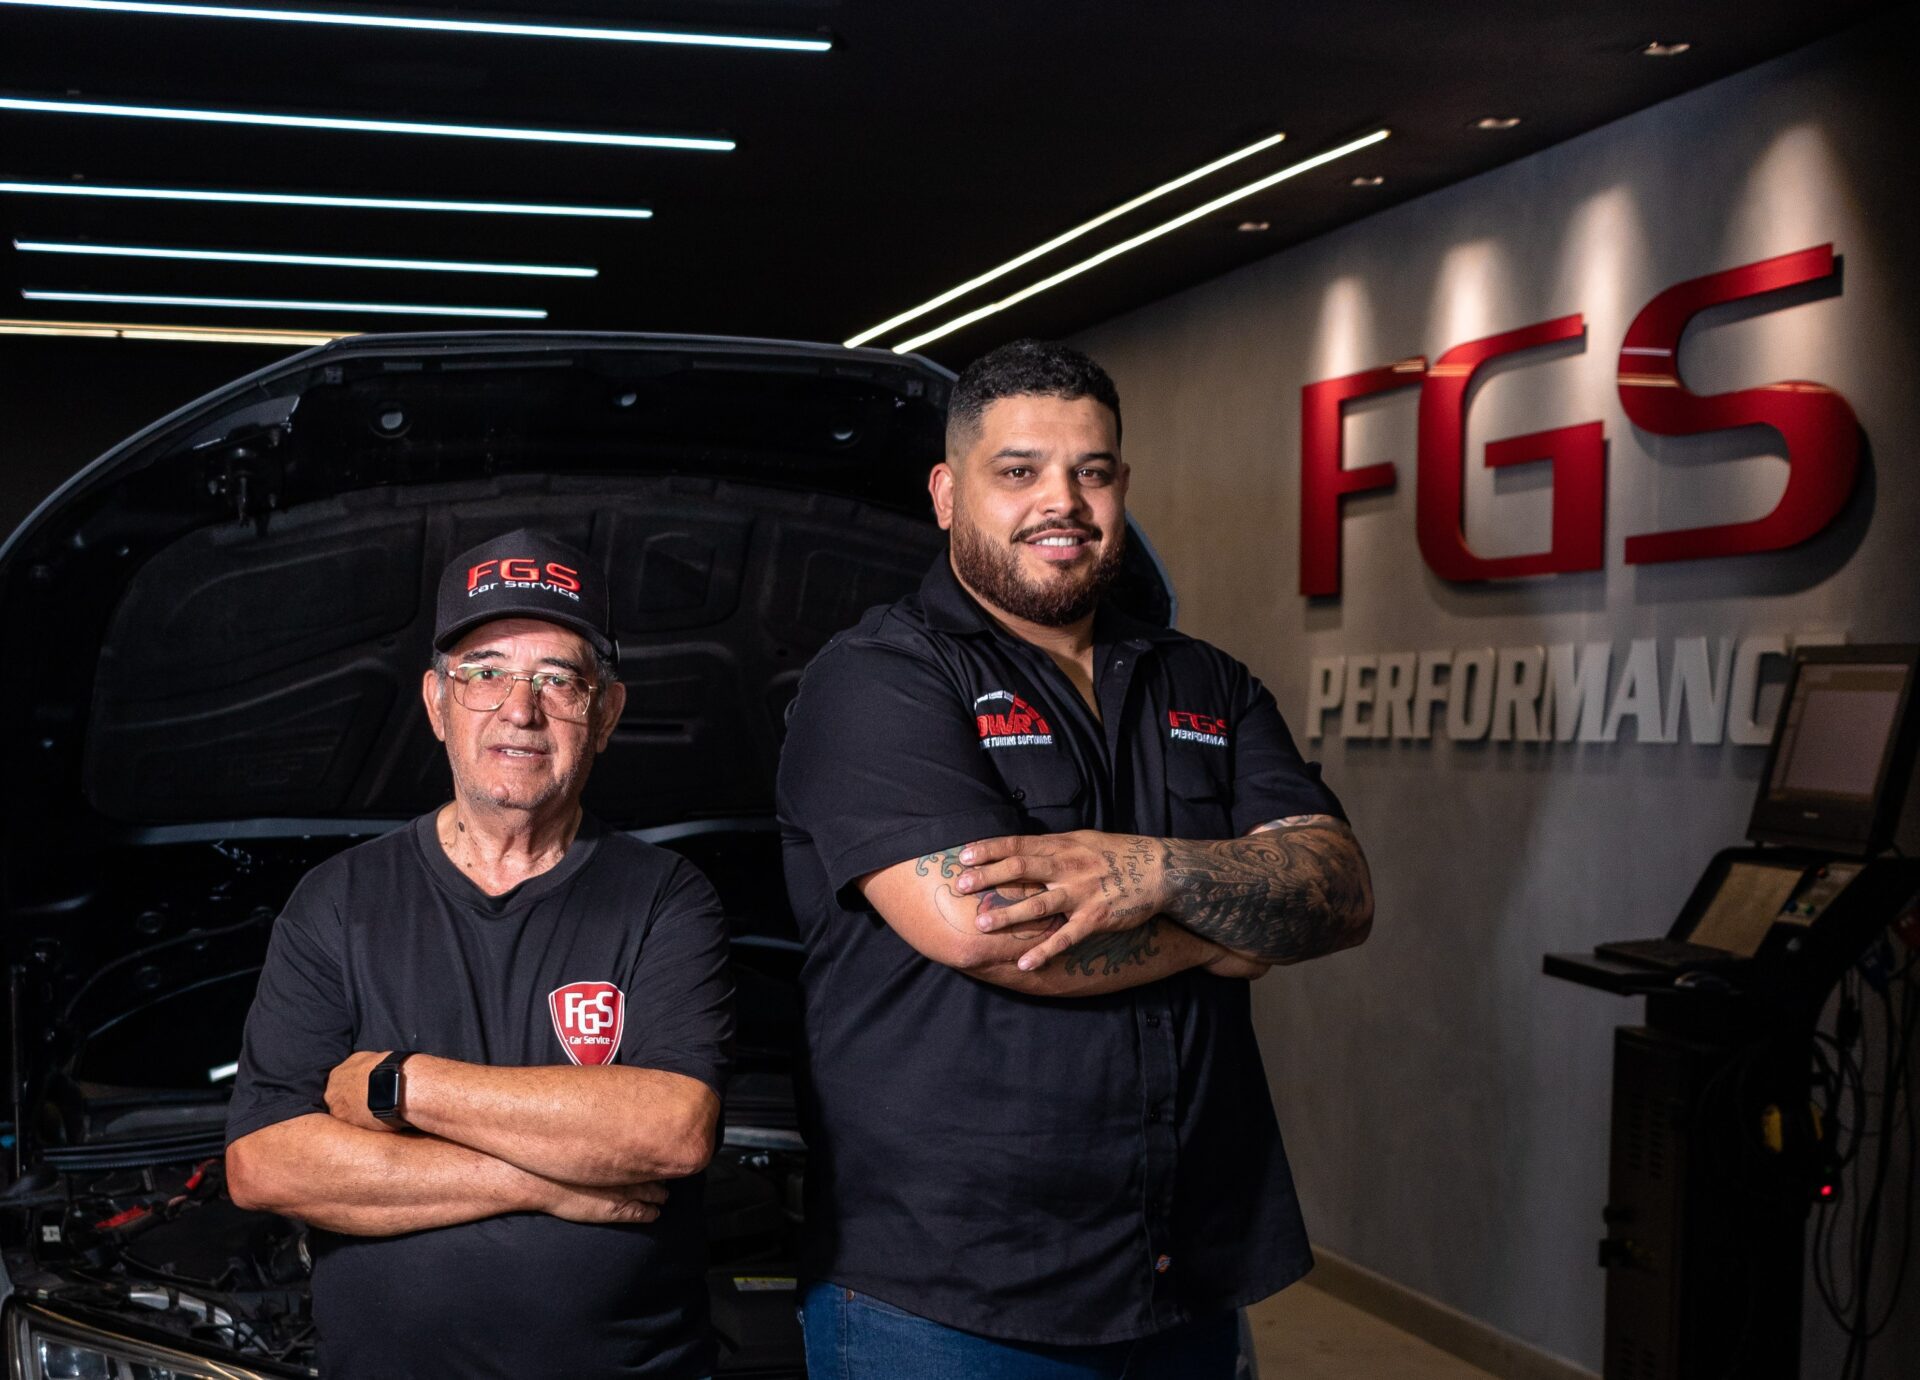 FGS Car Service desponta em Gravataí como especialista em manutenção e performance